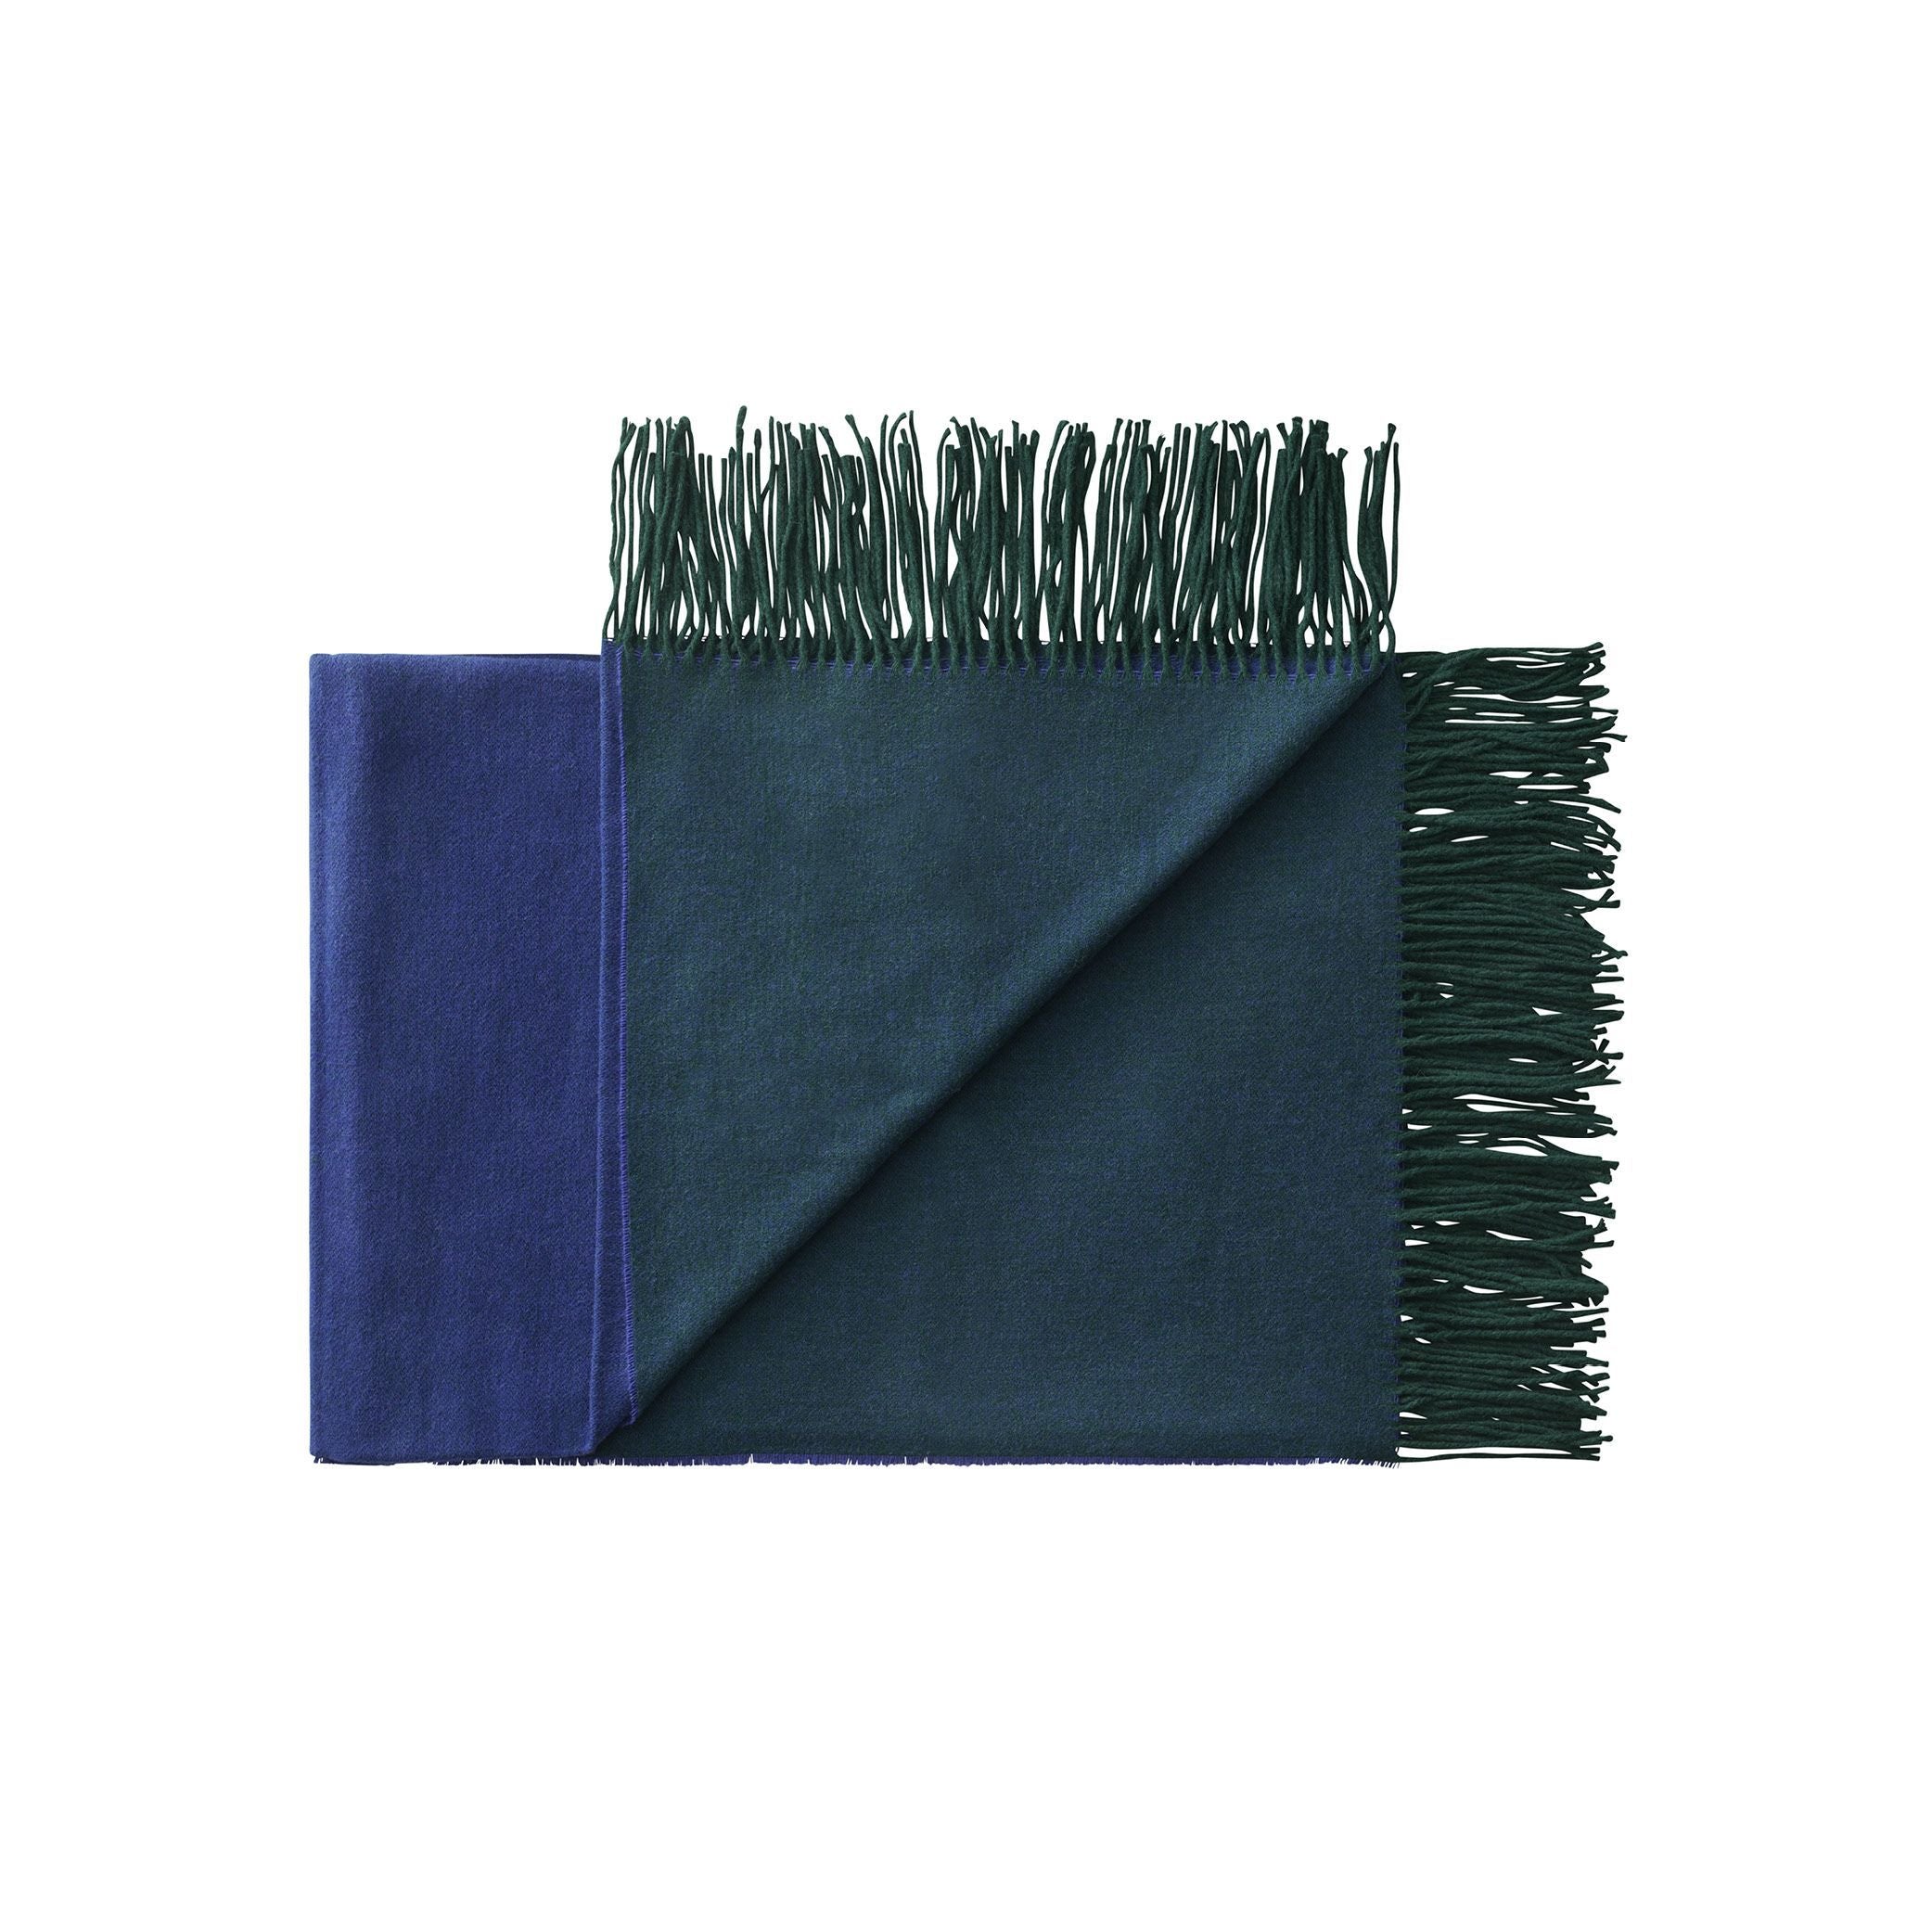 Silkeborg Uldspinderi Franja werfen 170x140 cm, grün/blau